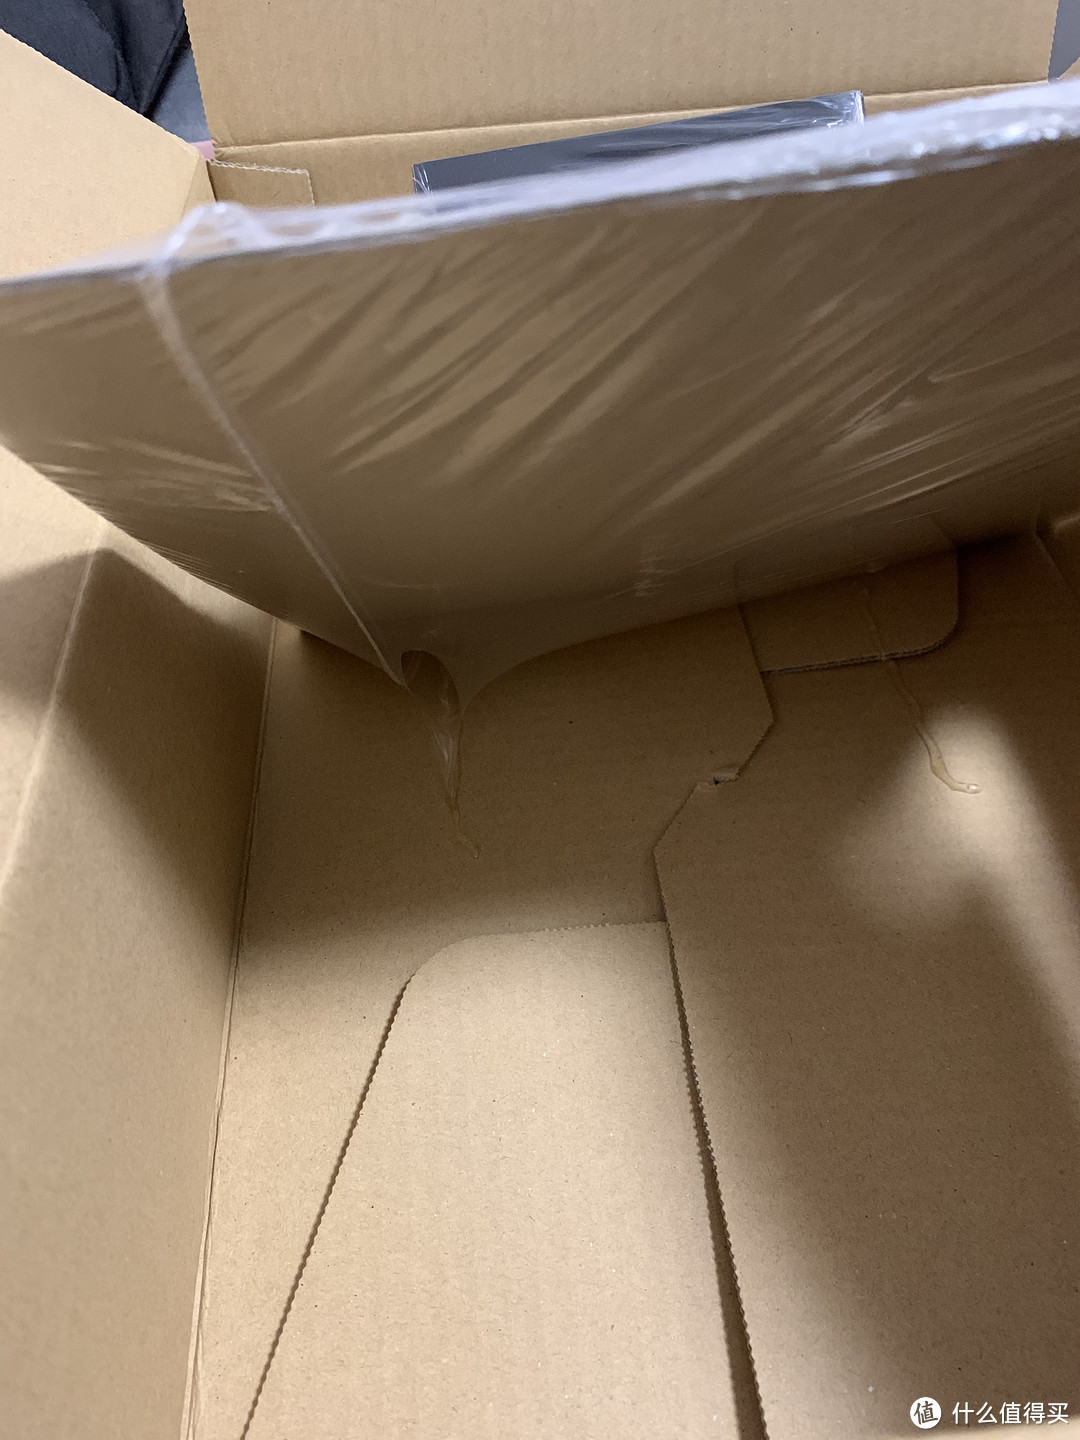 纸板用胶水固定在箱子底部